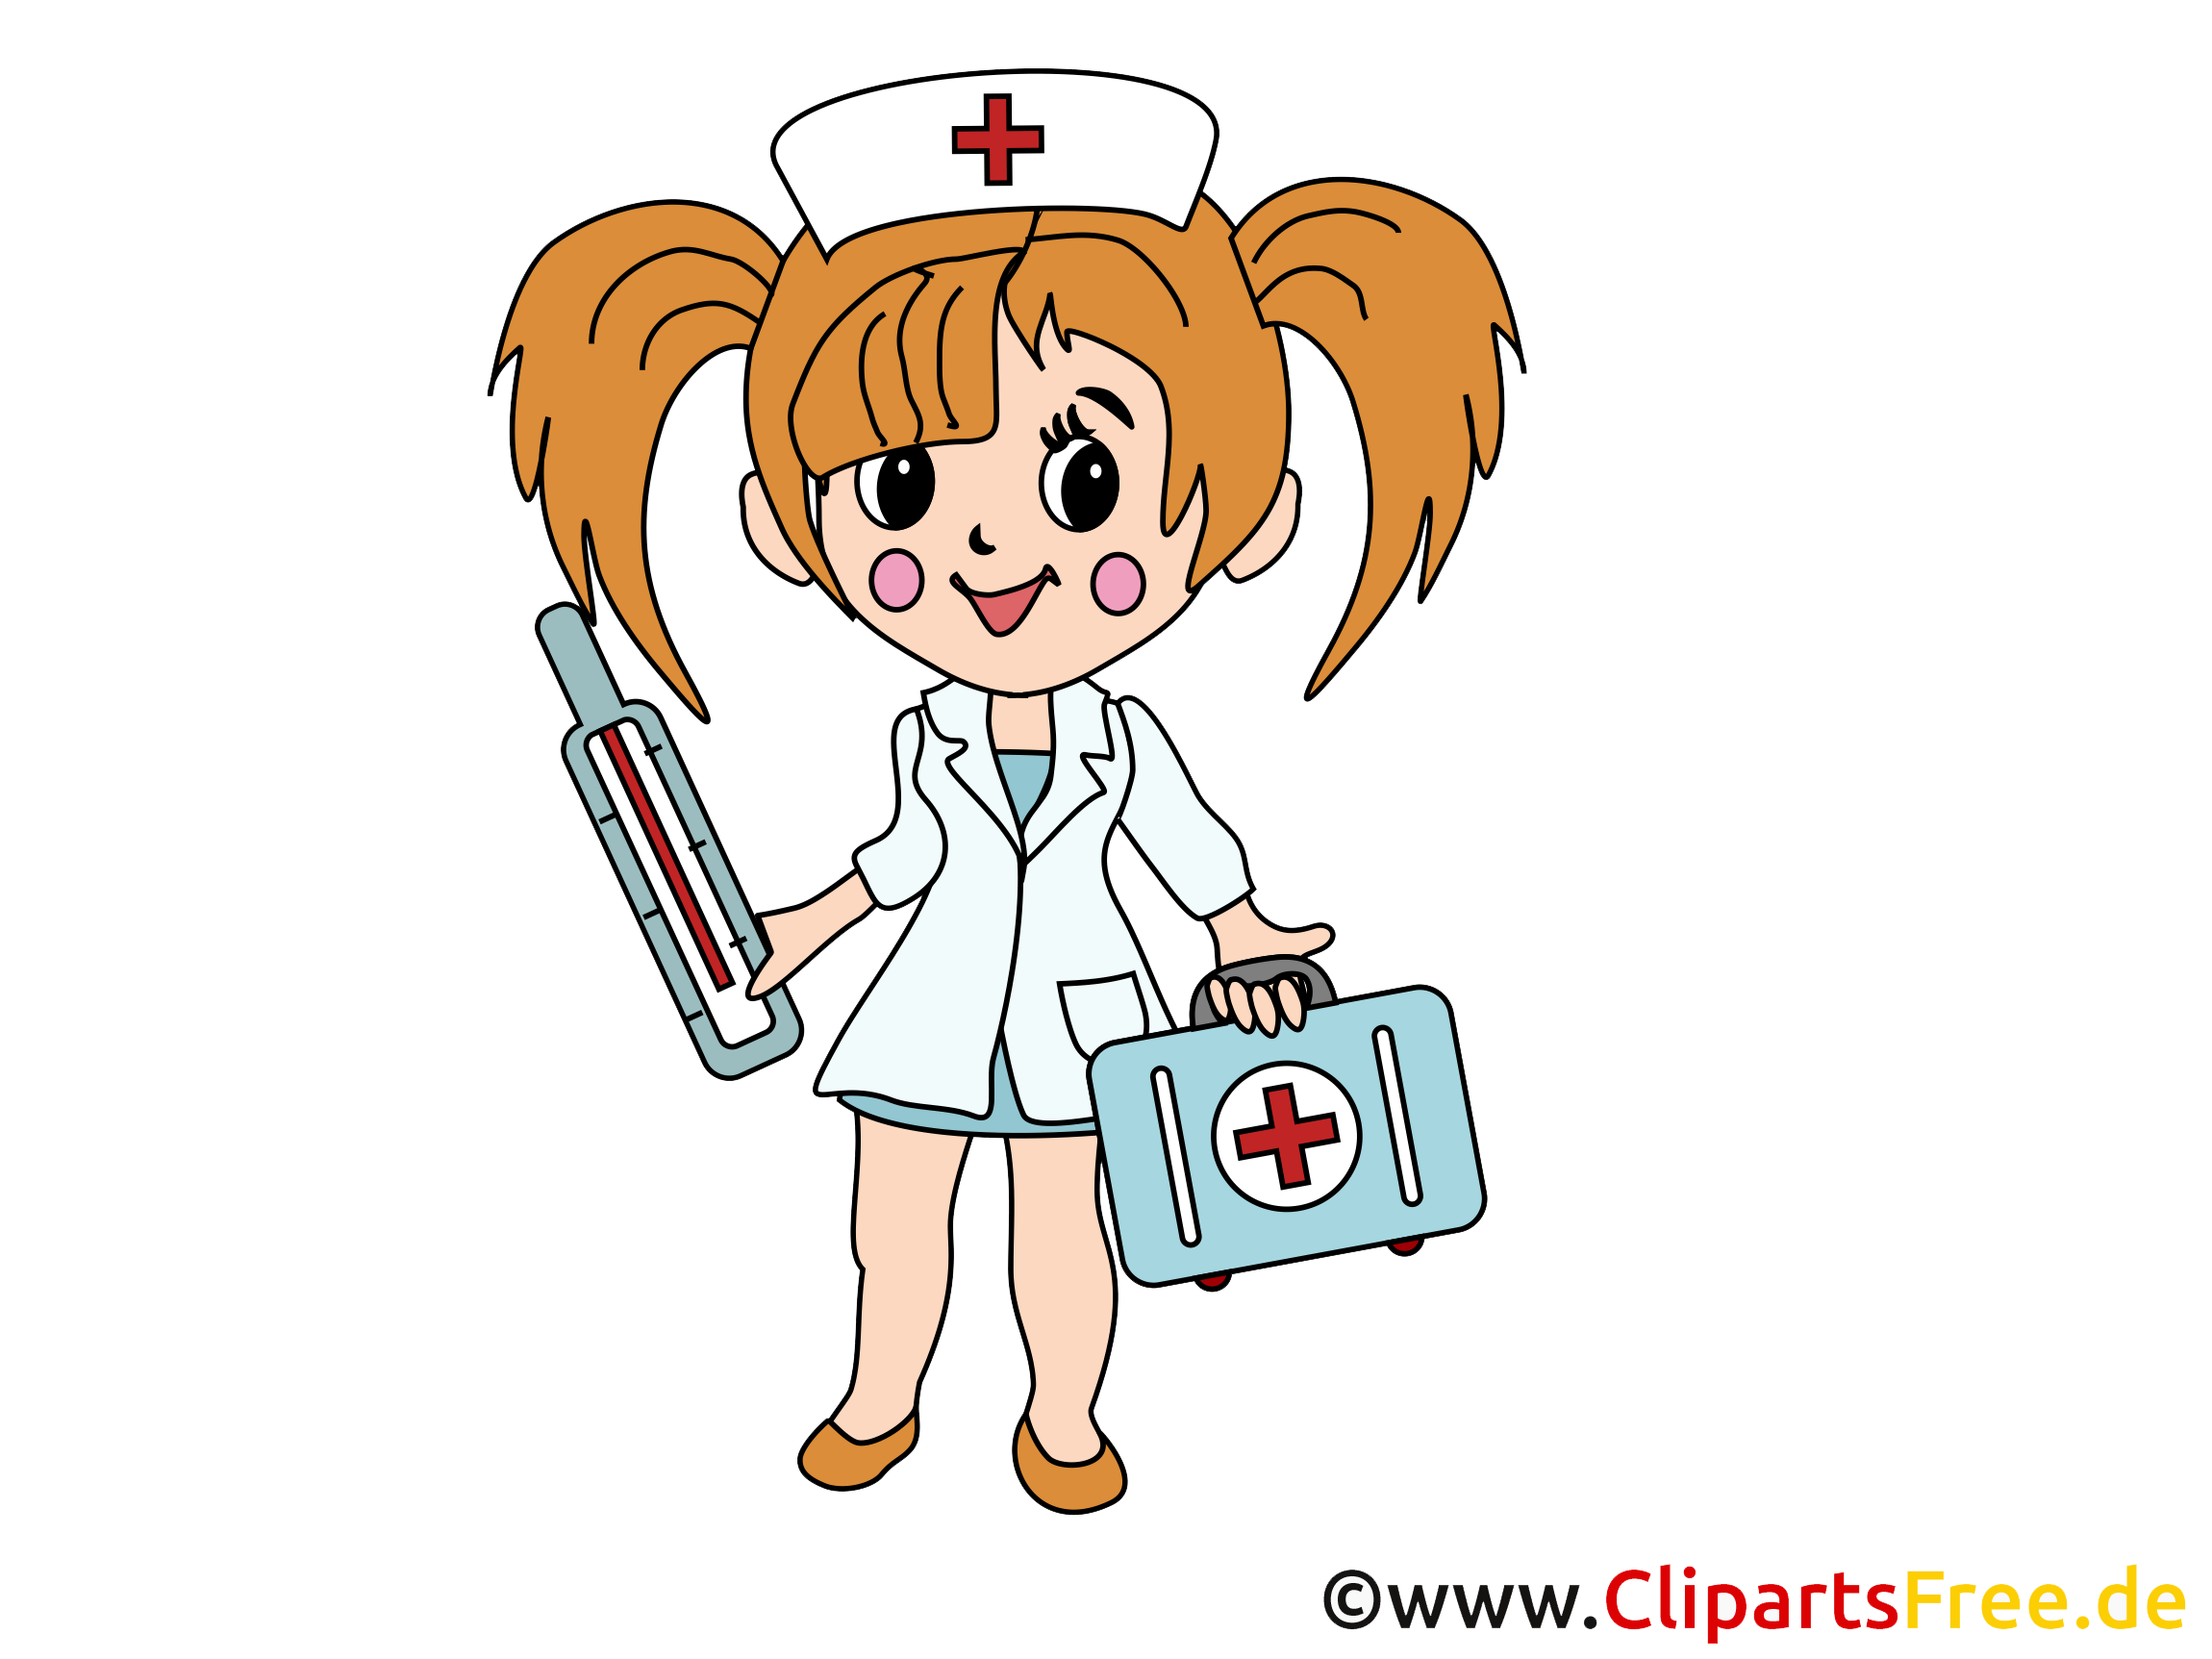 Infirmière cliparts gratuis - Médecine images